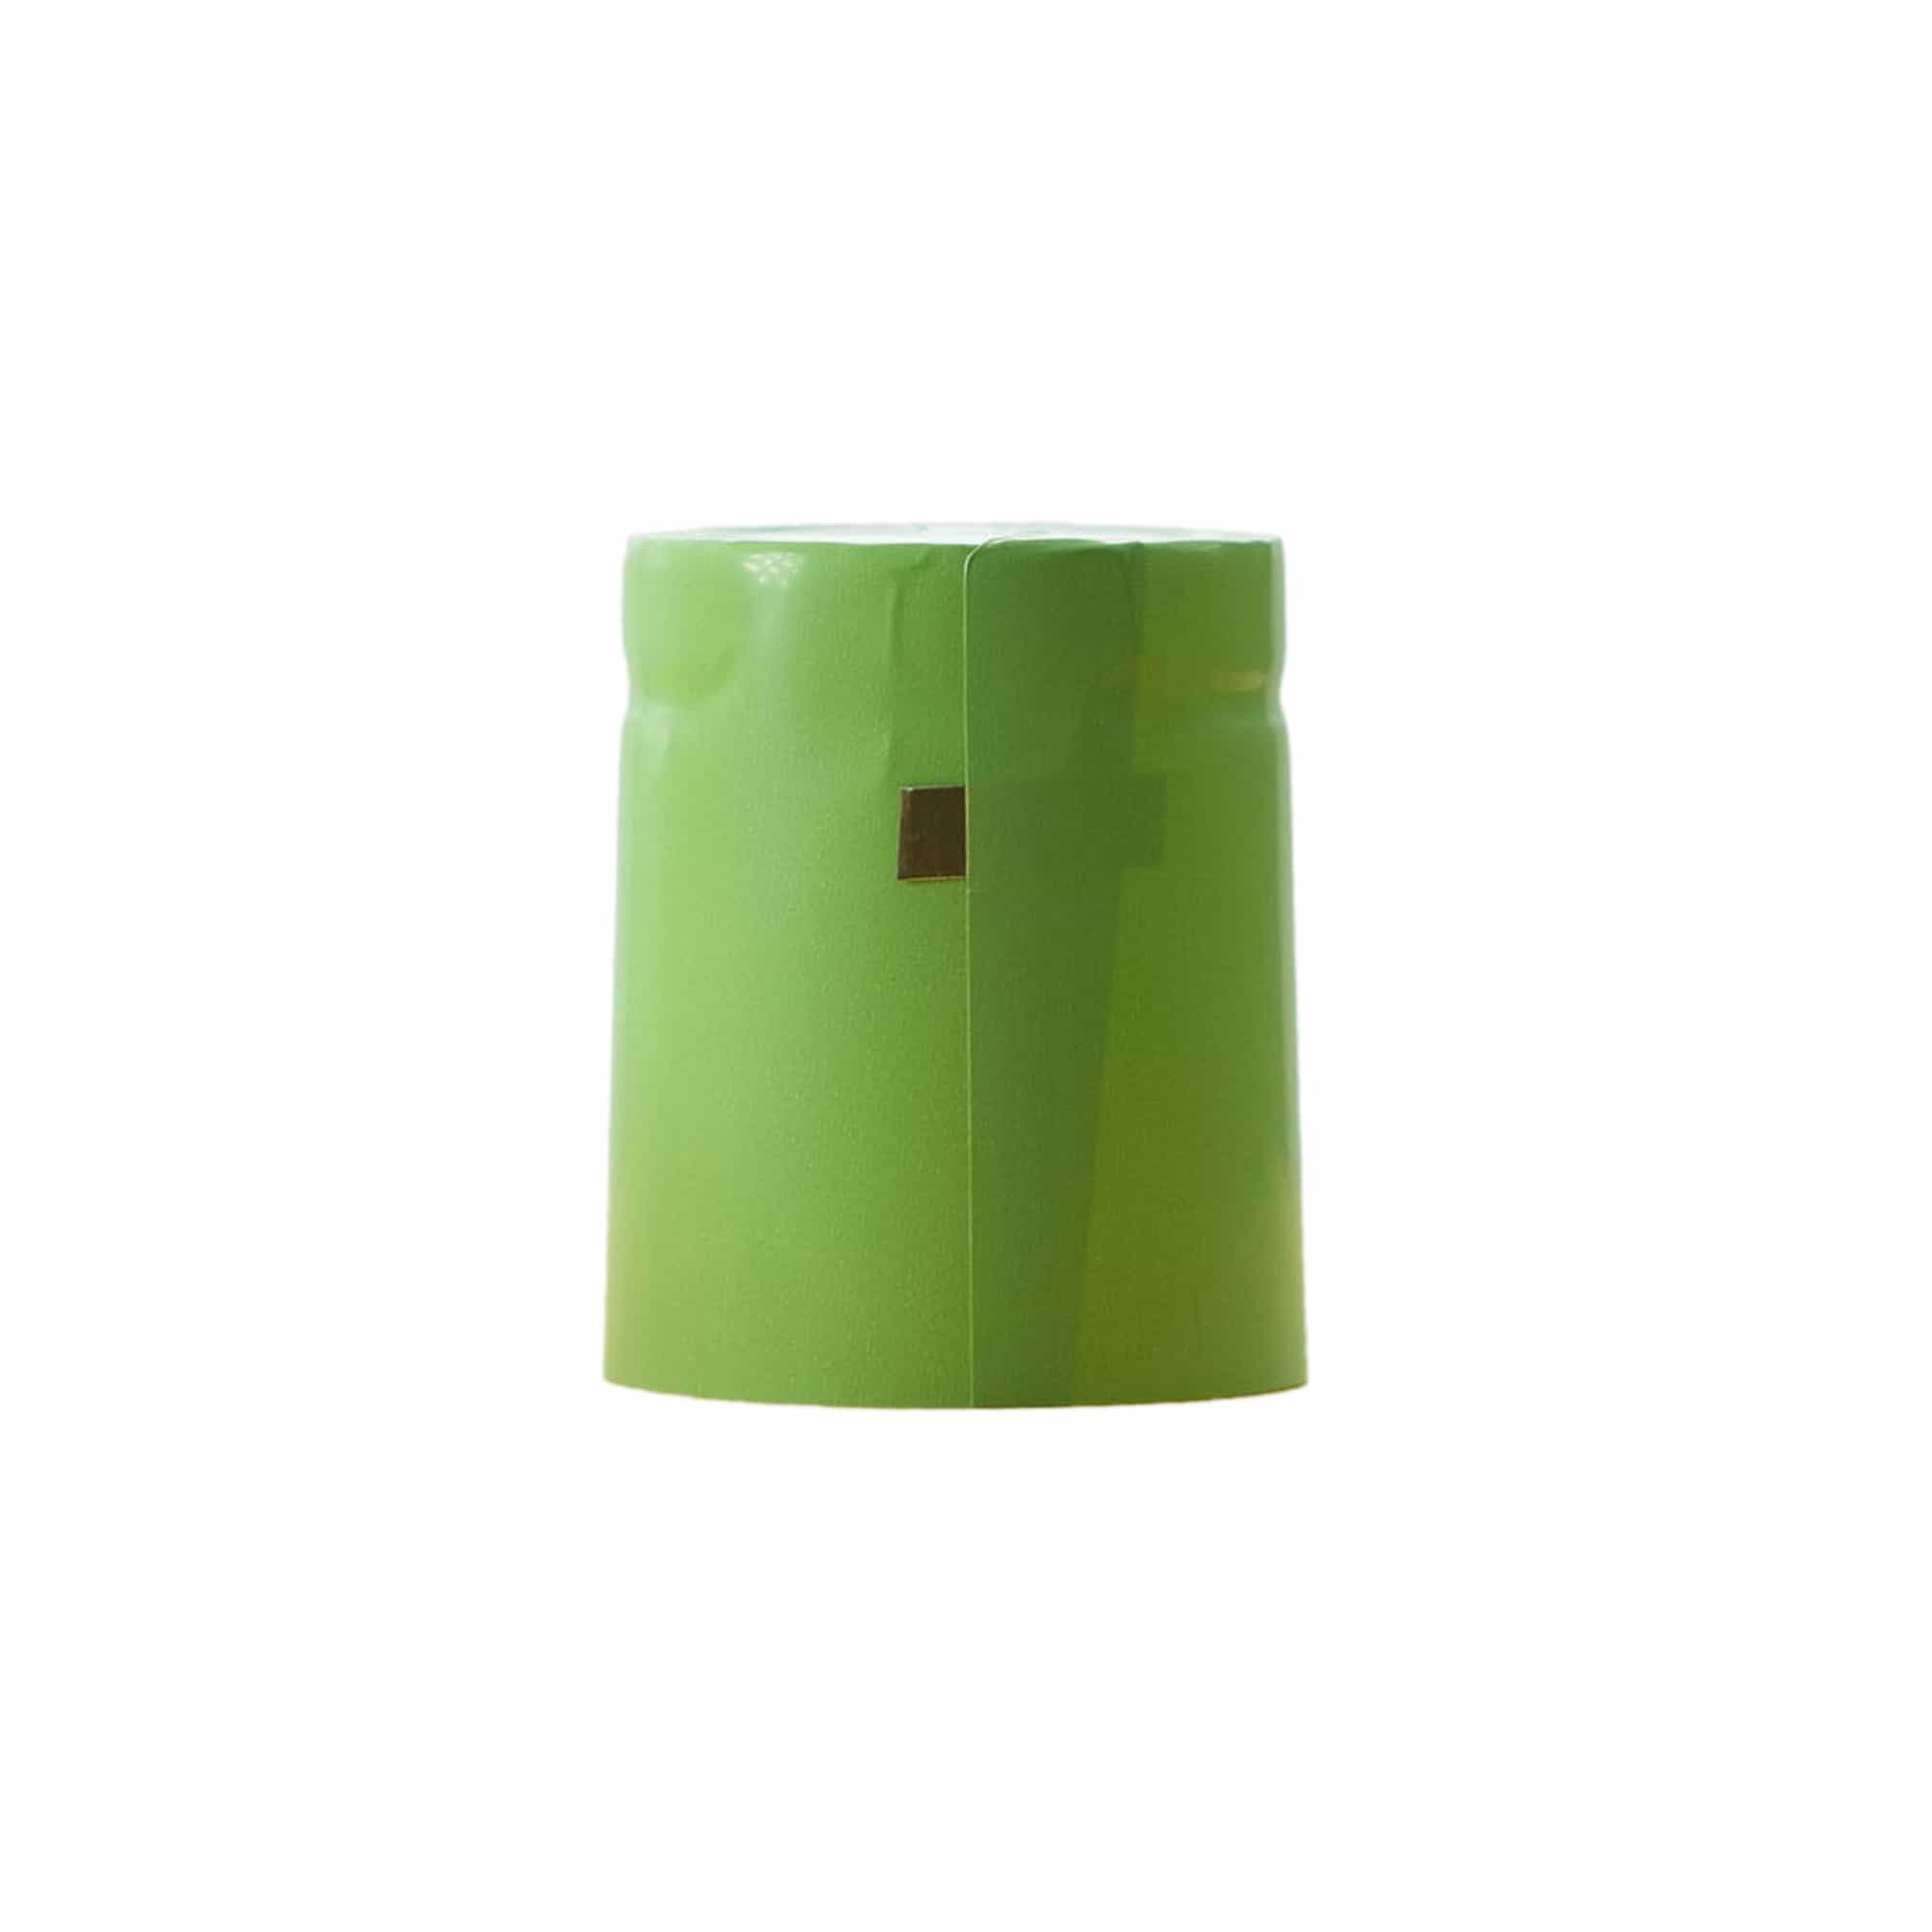 Krympkapsel 32x41, PVC-plast, lindblomsgrön